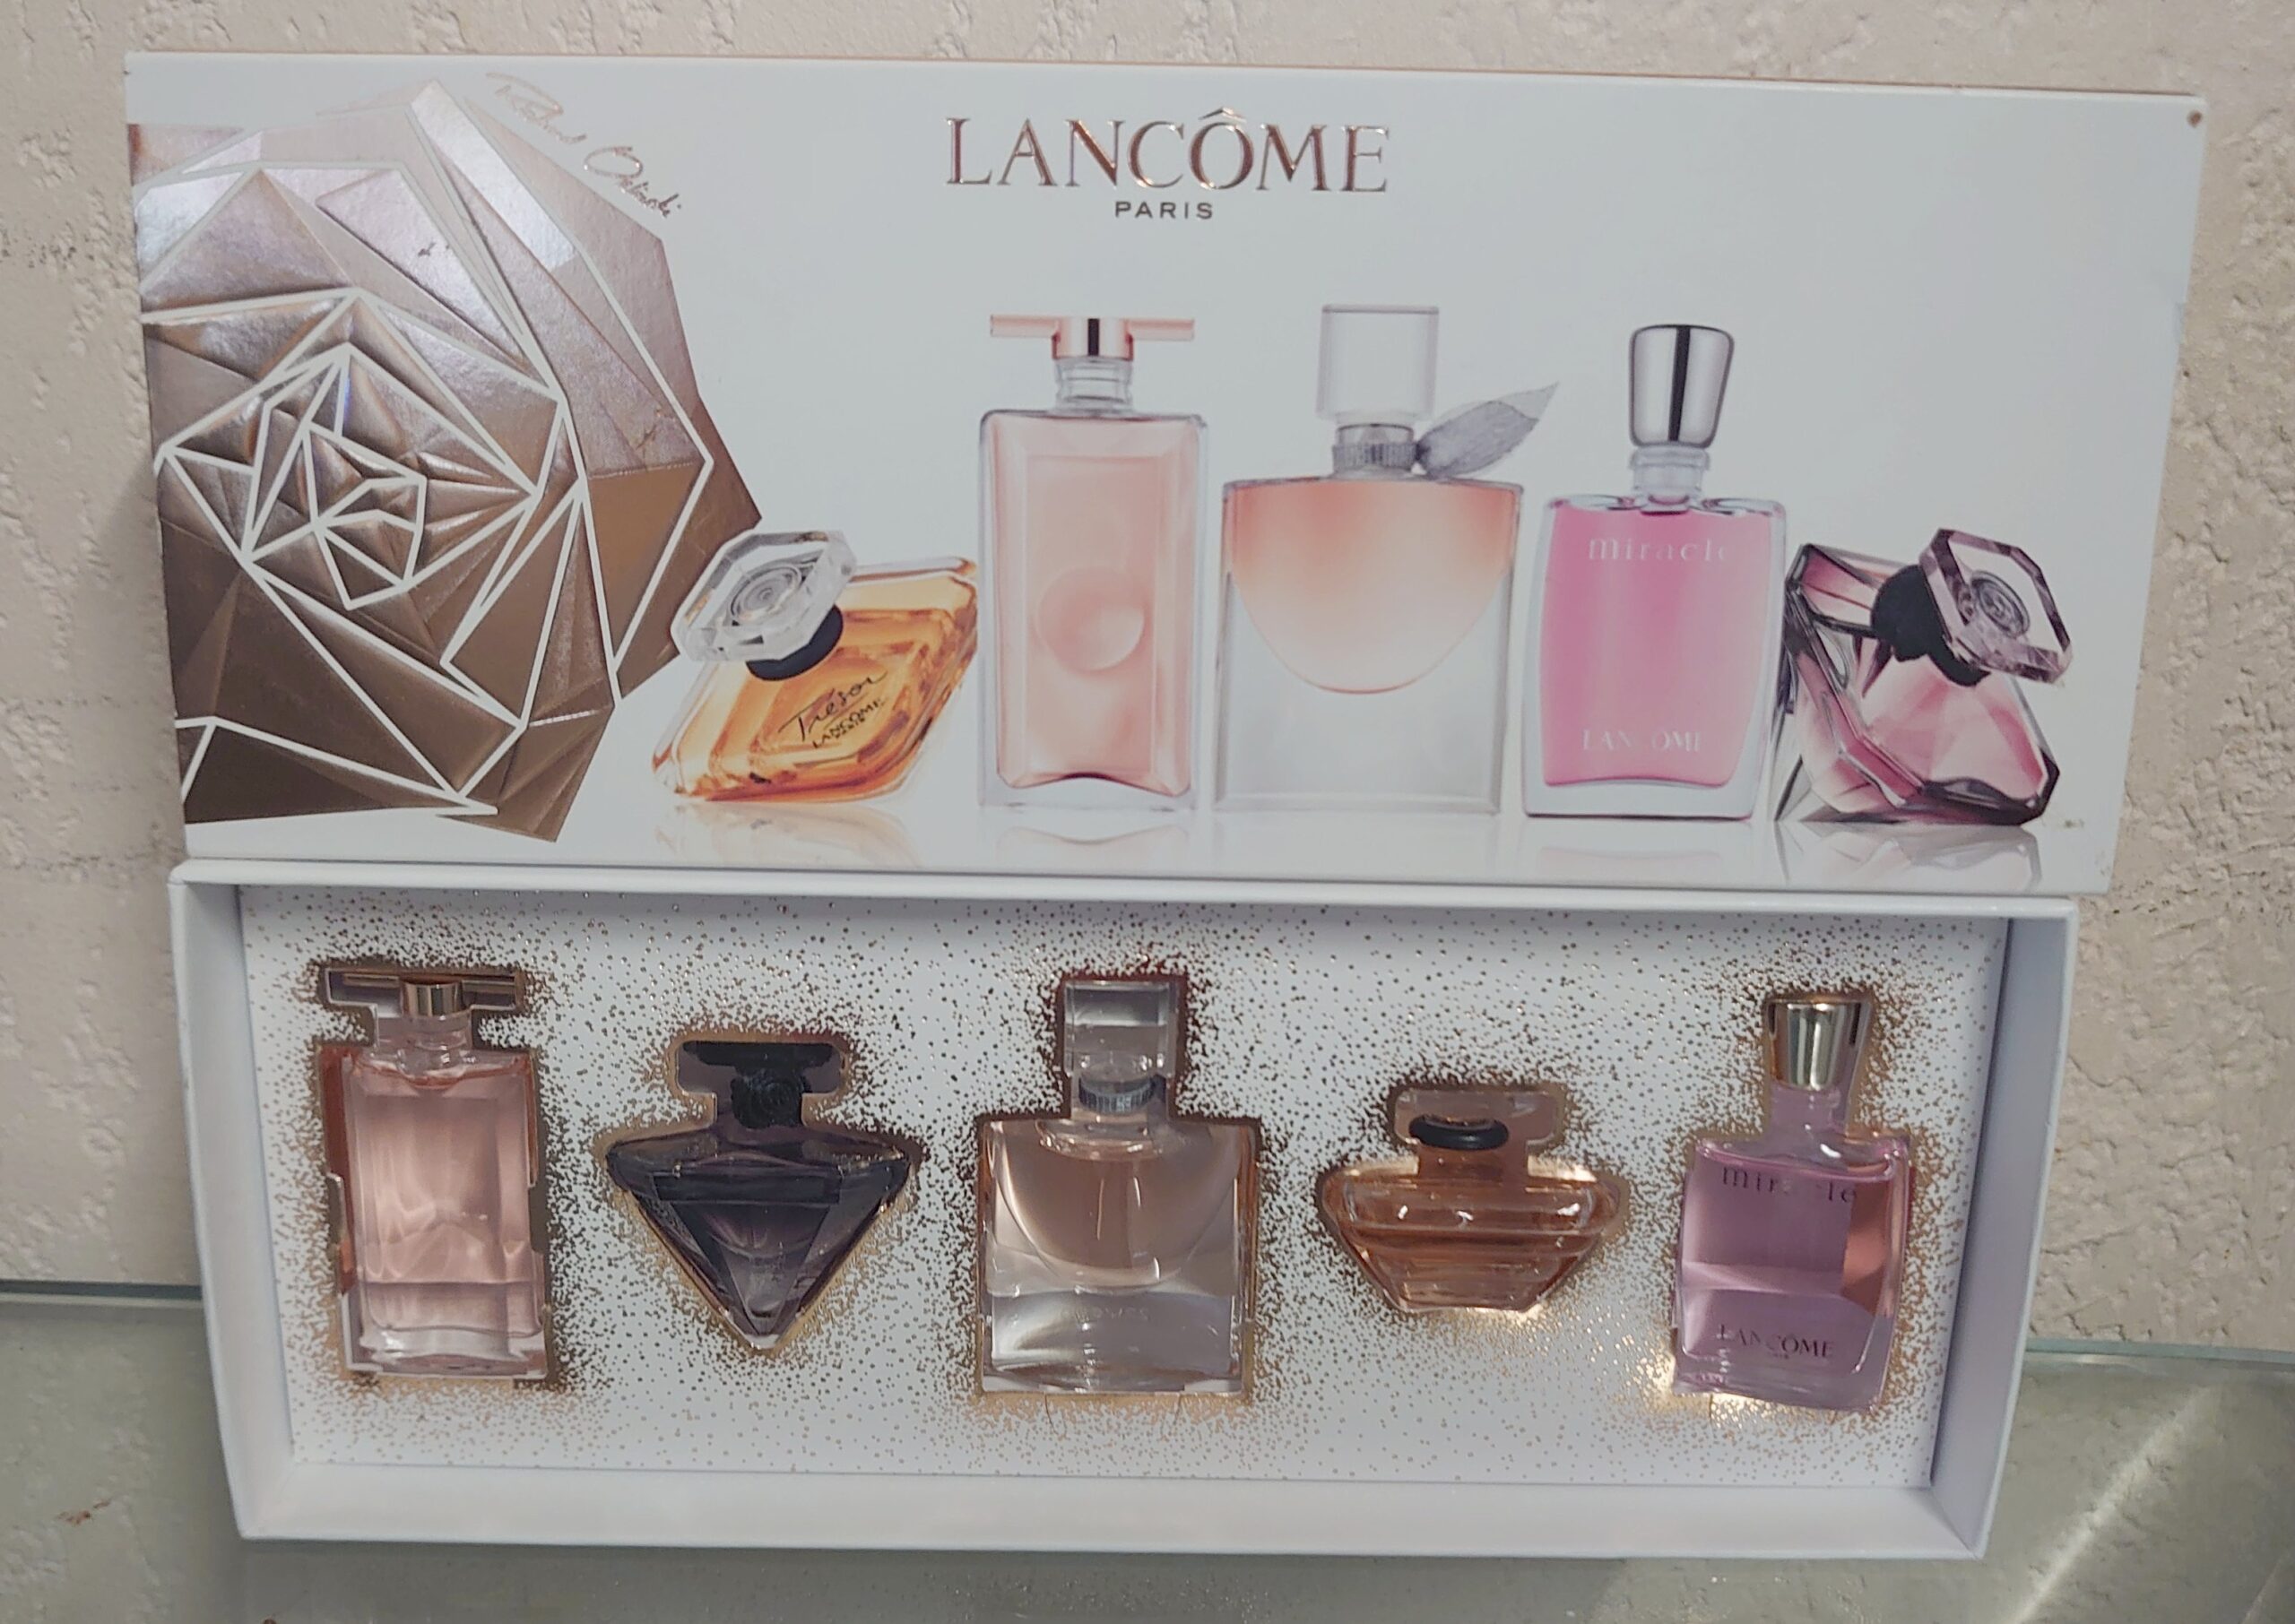 Lancôme Coffret 5 Miniatures de parfum Femme